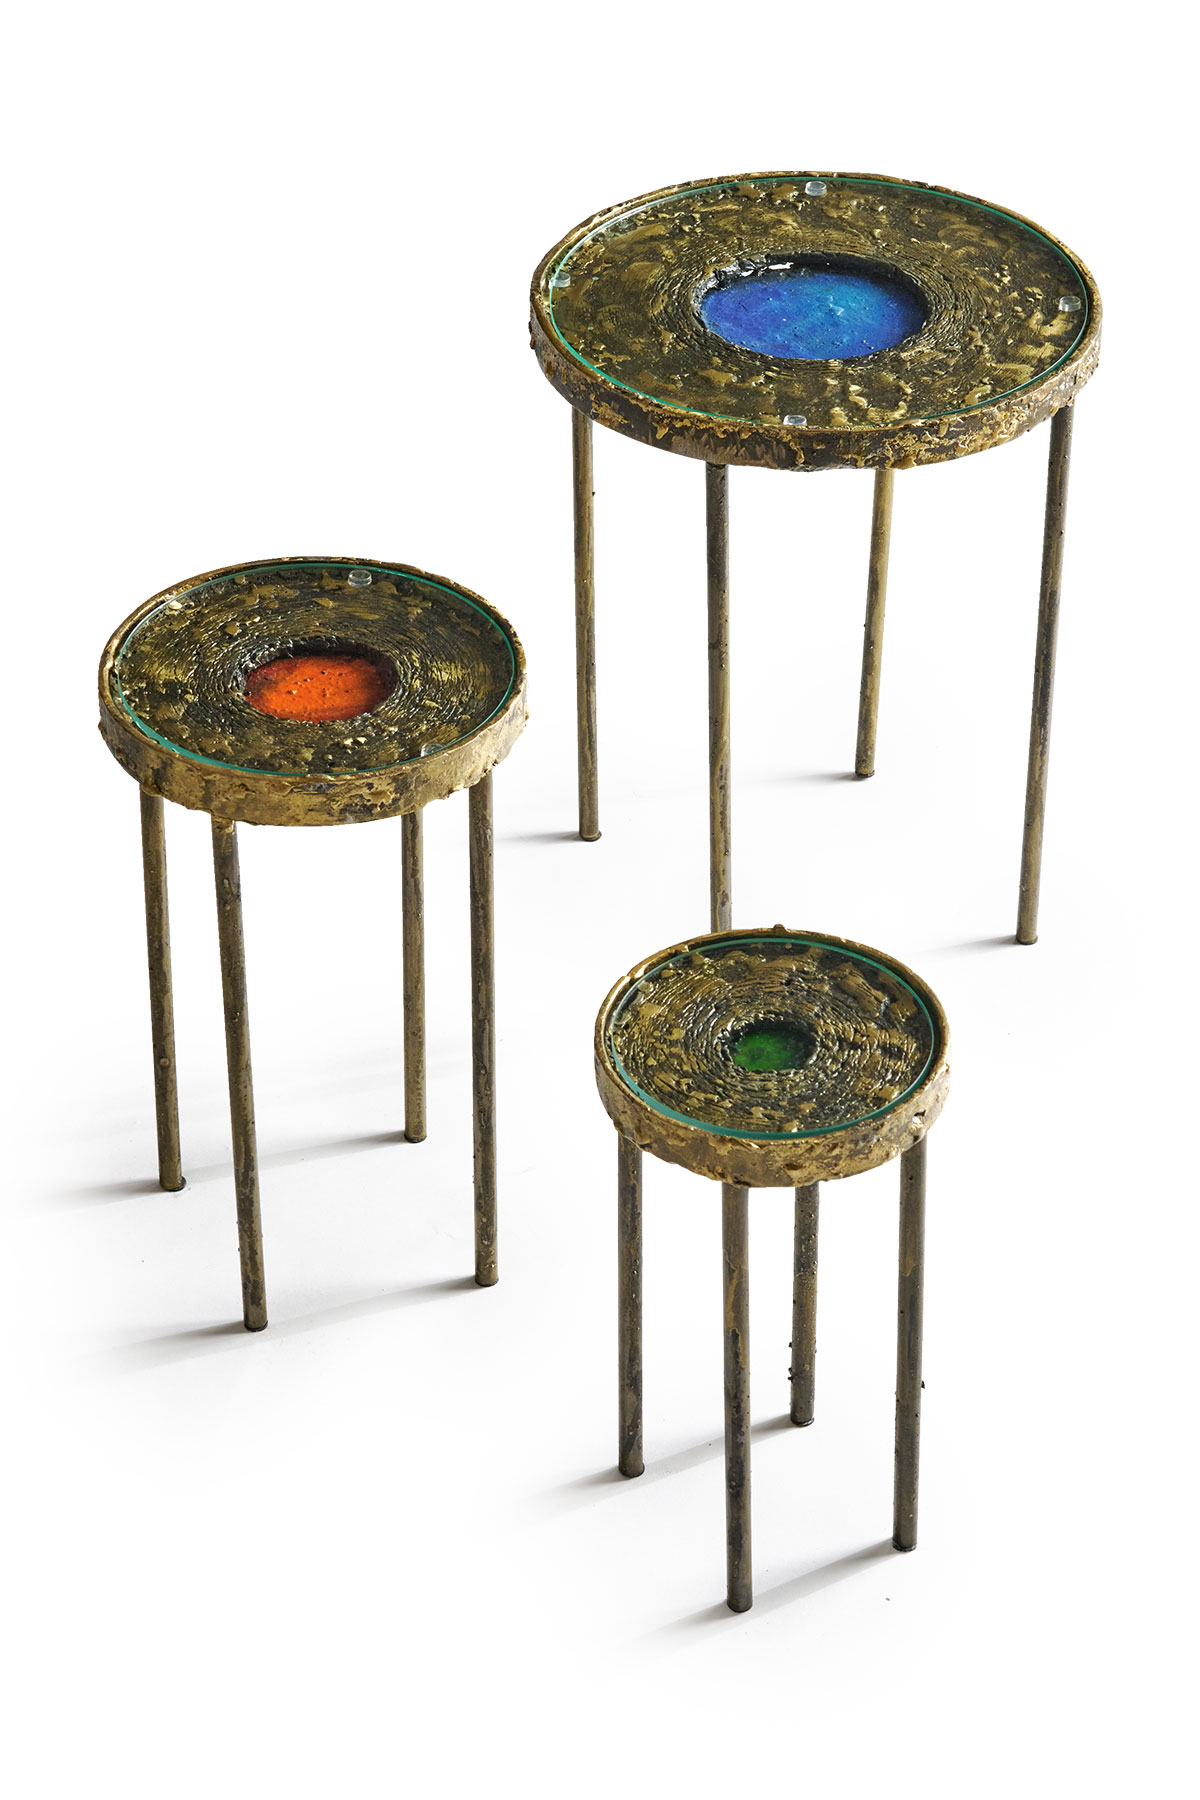 James Bearden Moon Pool Nesting Tables from Studio Van den Akker